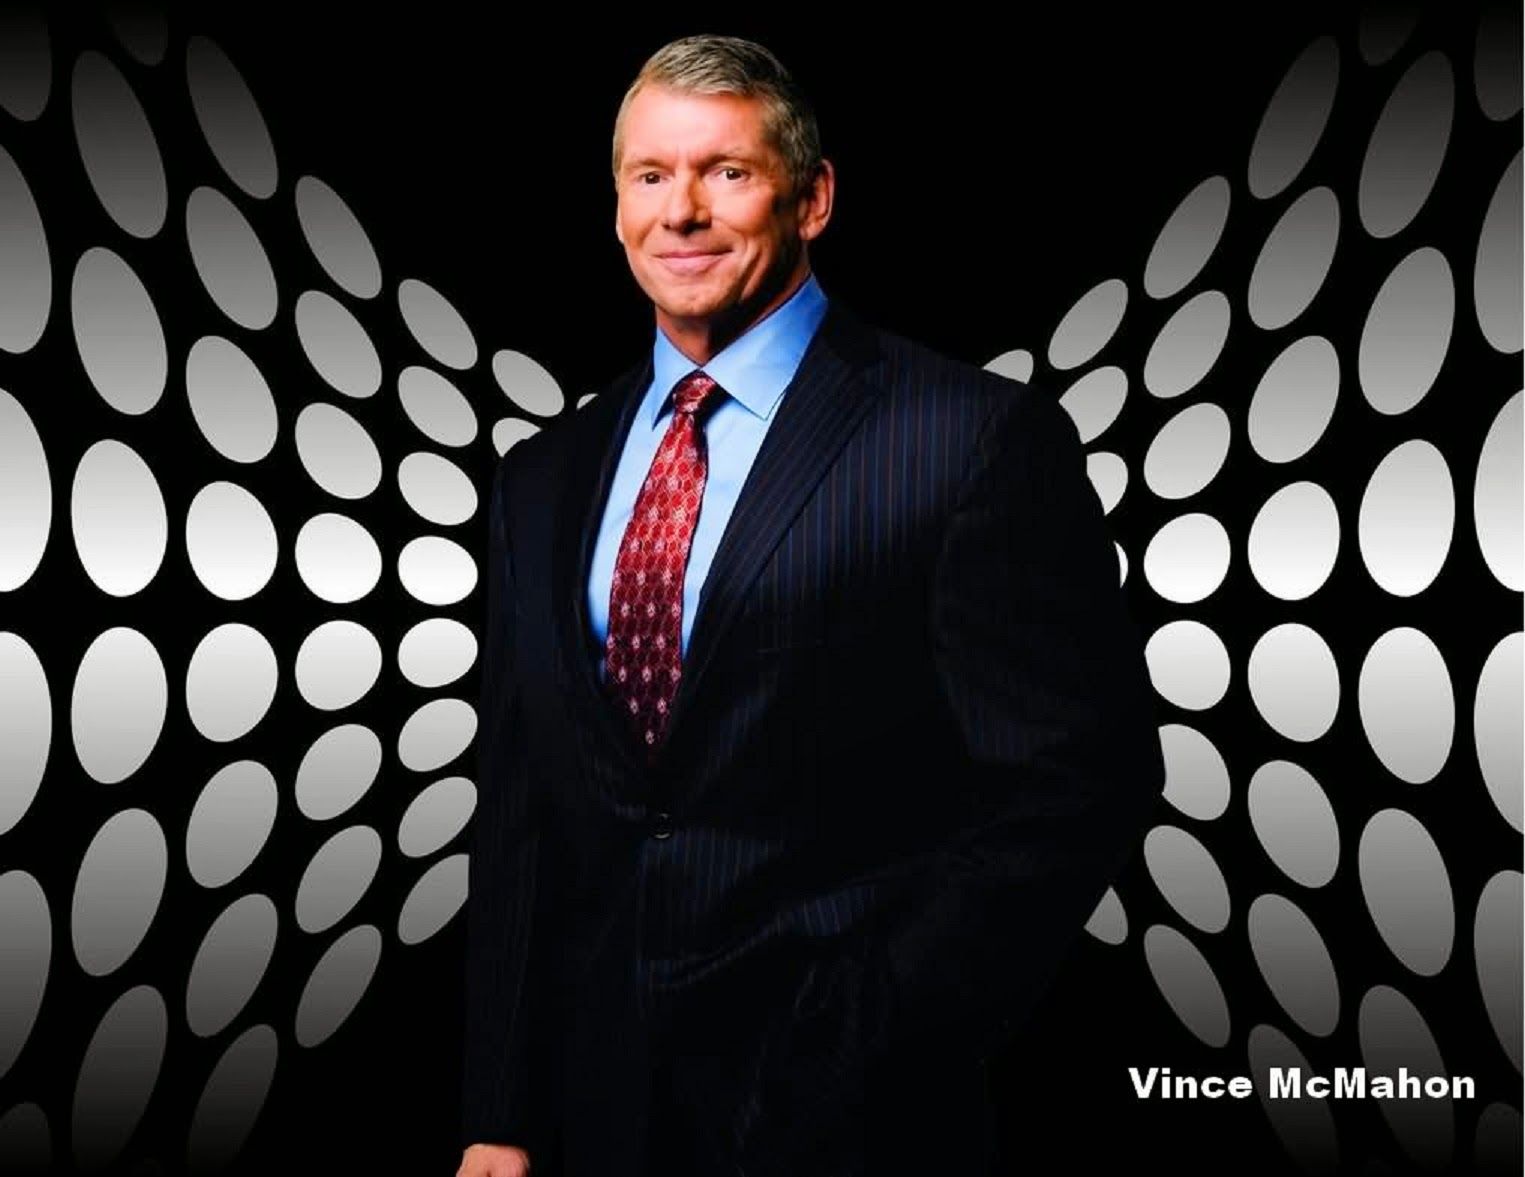 Vince McMahon Wallpaper. Vince Lombardi